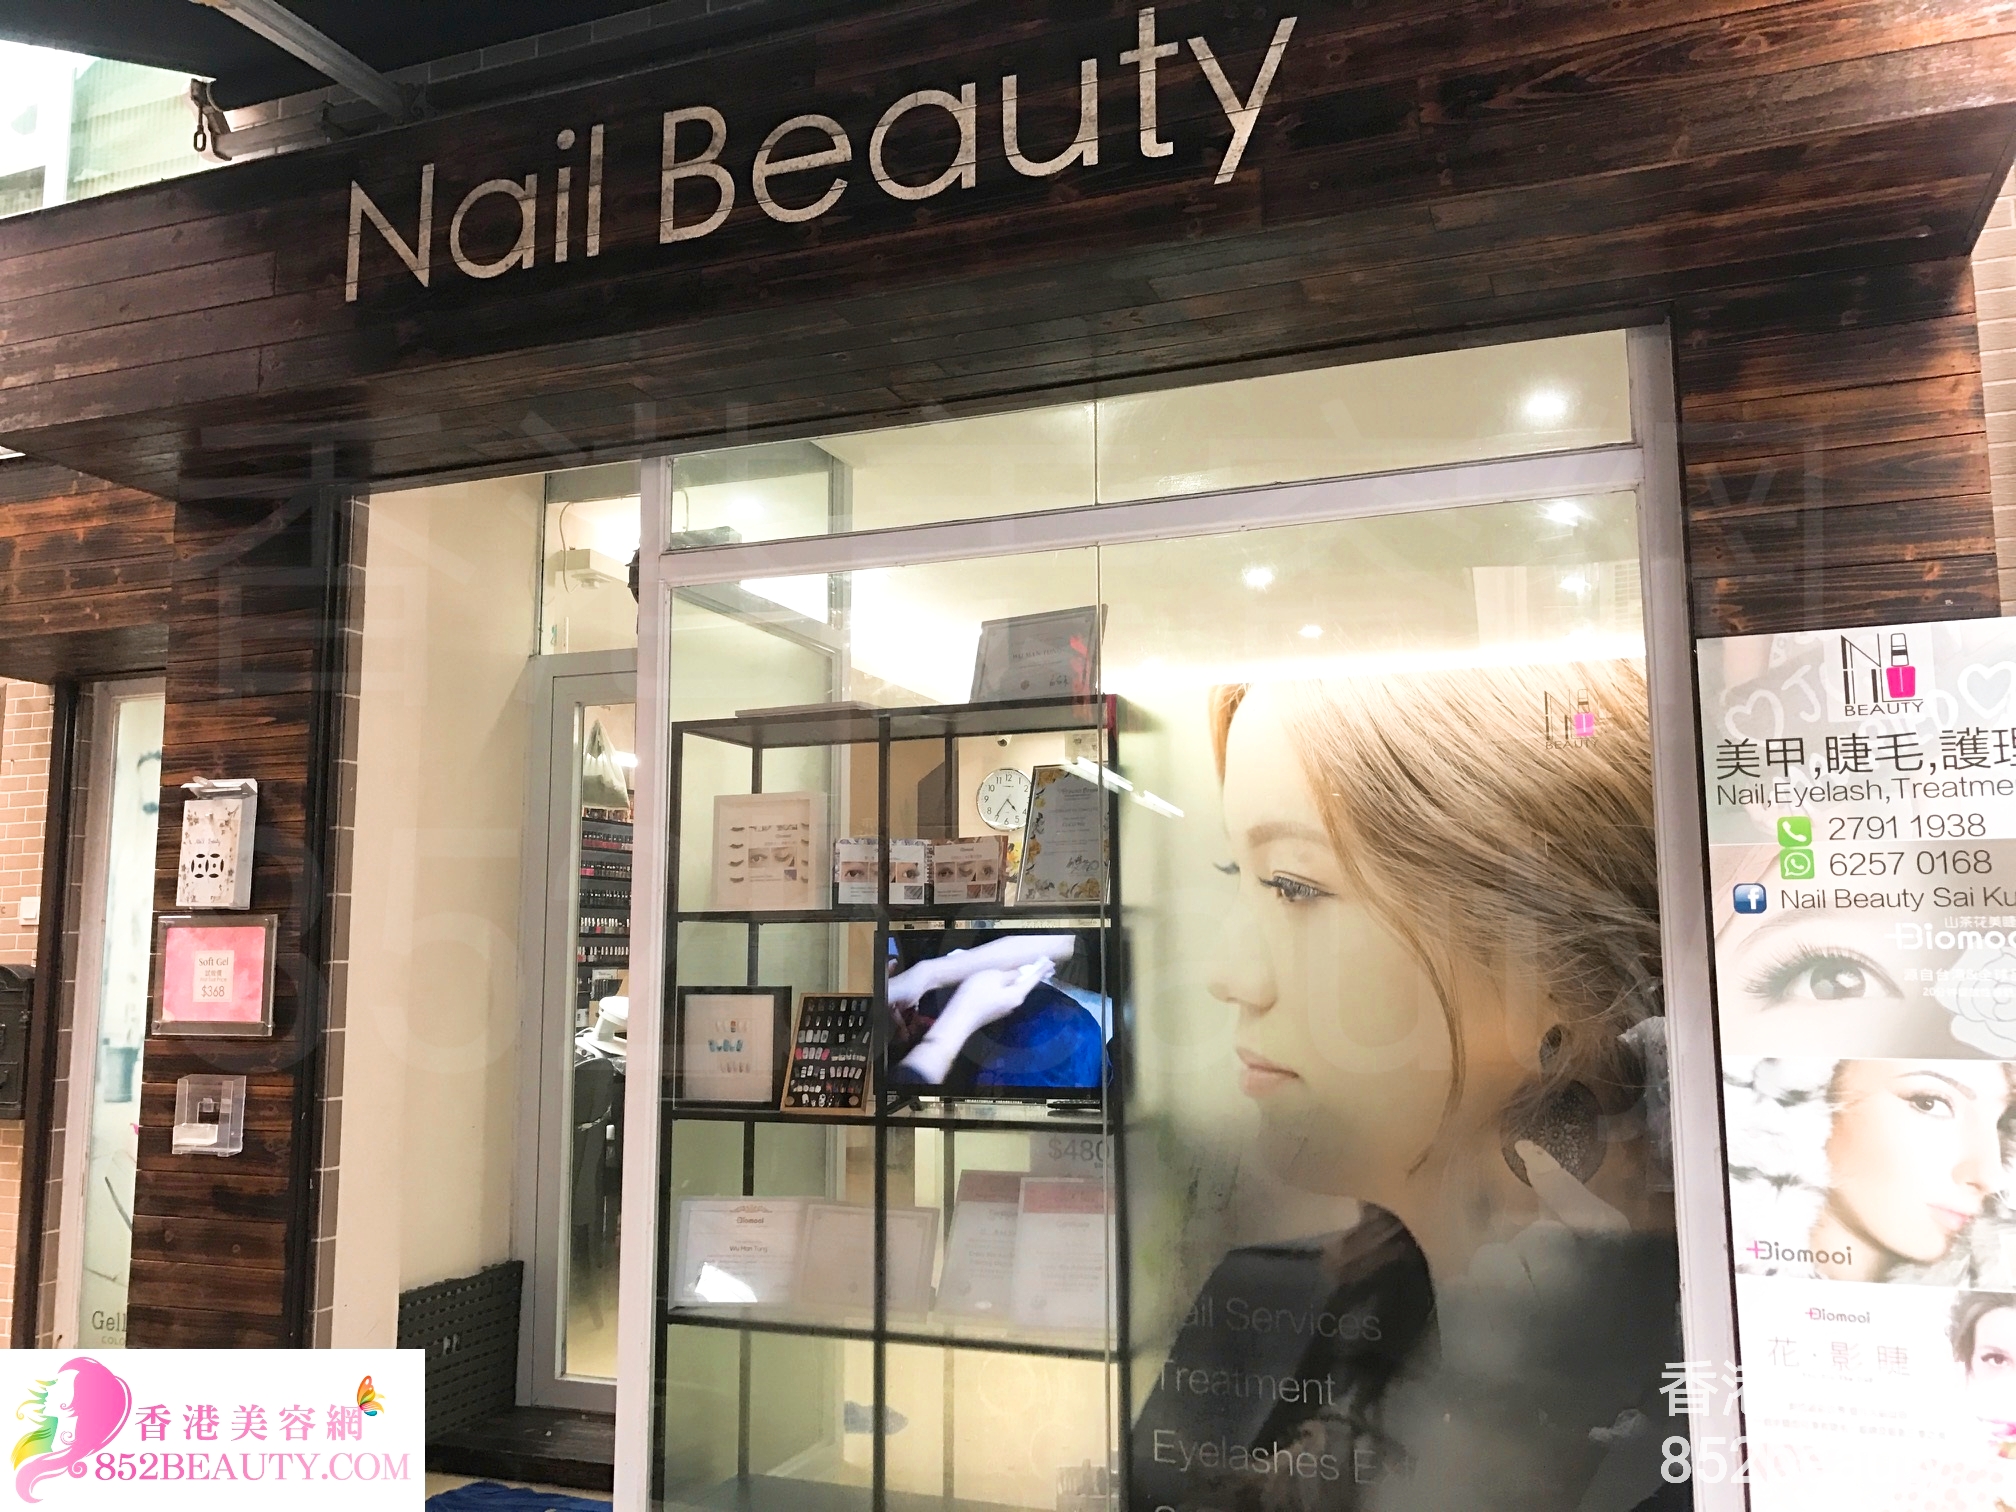 修眉/眼睫毛: Nail Beauty (西頁店)